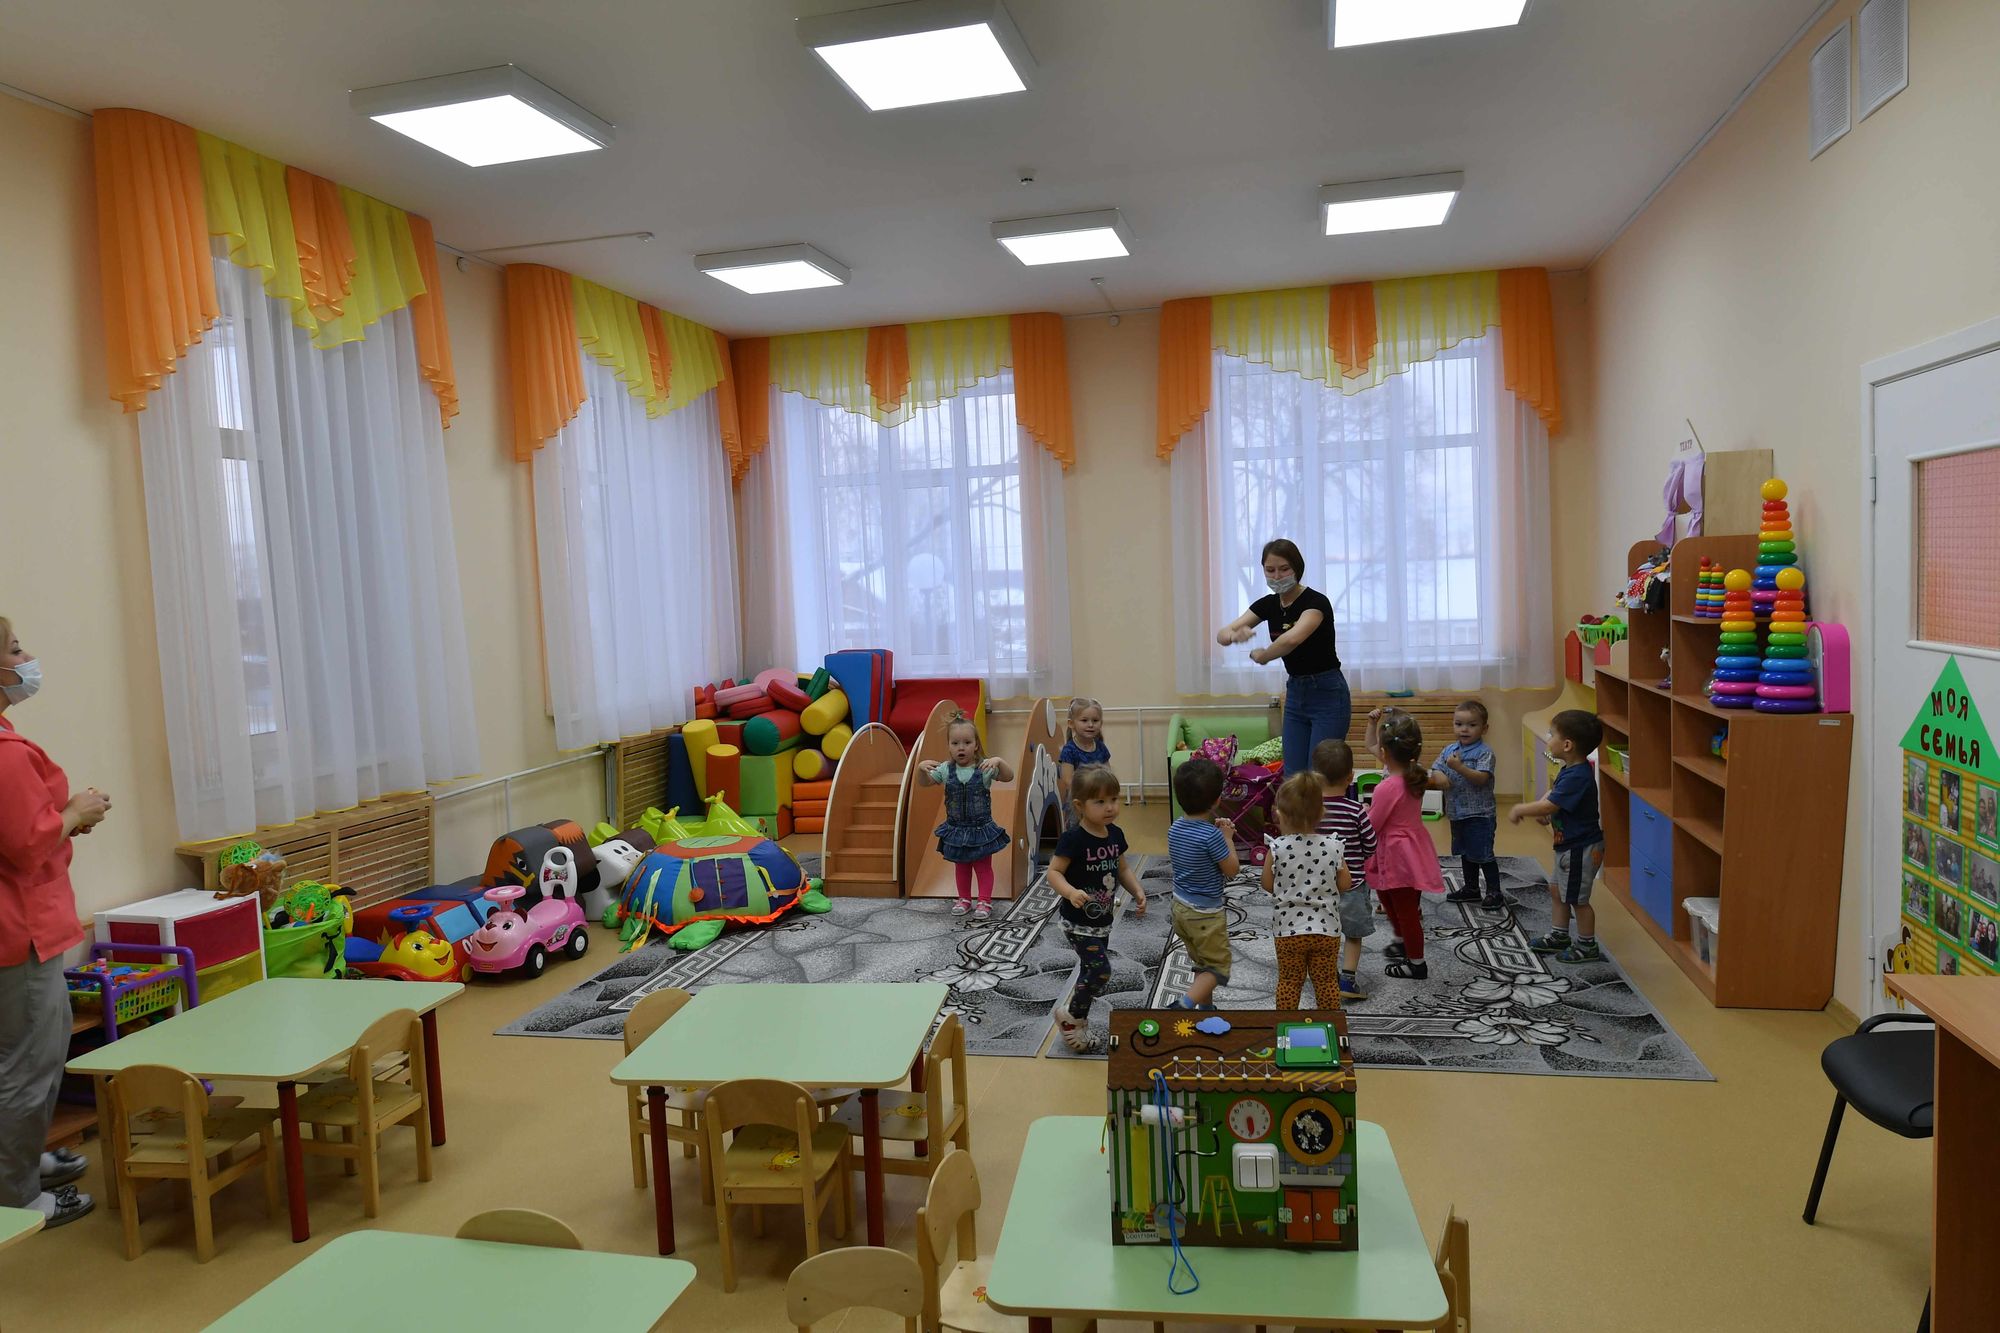 

14 детских садов планируют построить в Удмуртии в 2021 году

